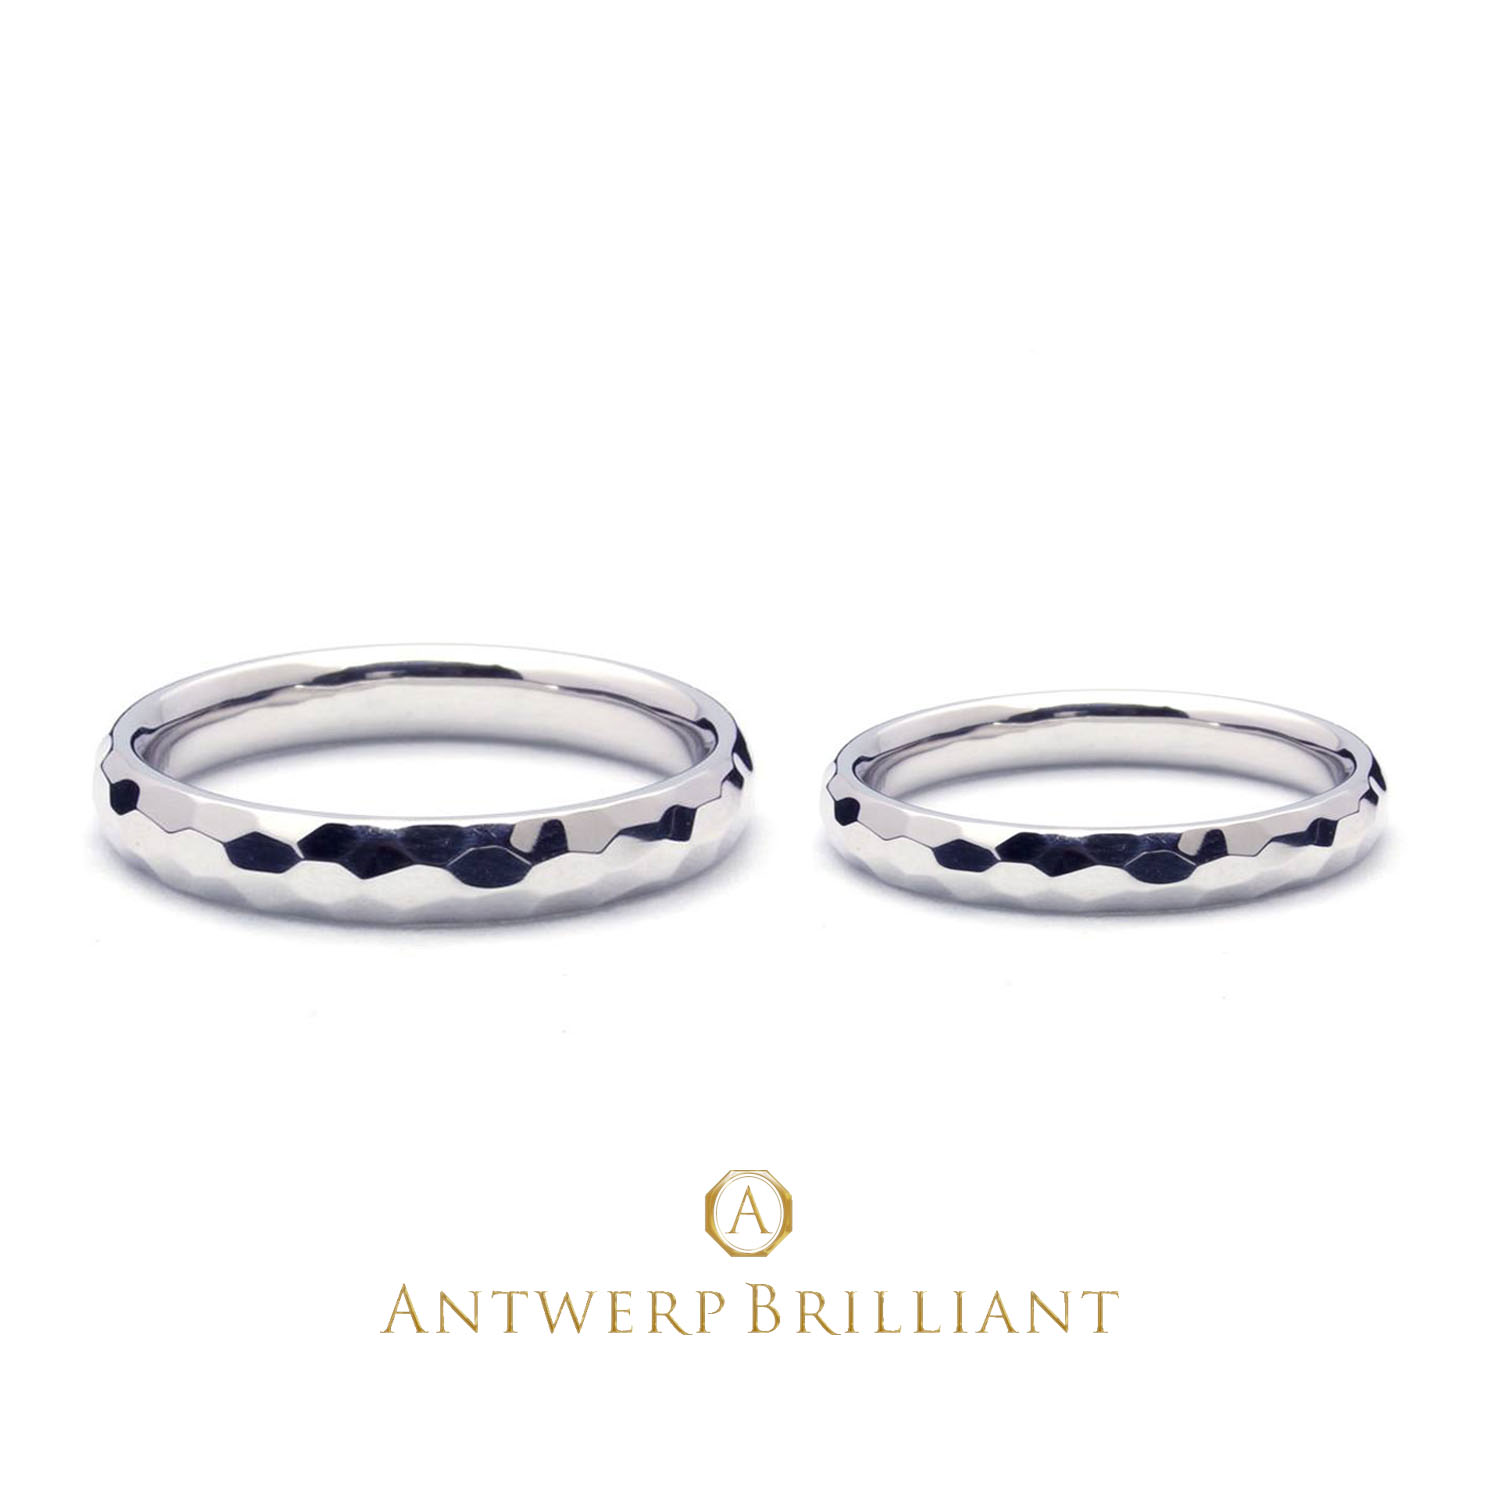 ハンマリングやハンマ仕上げは槌目仕上と言いブリッジ銀座の人気結婚指輪デザイン